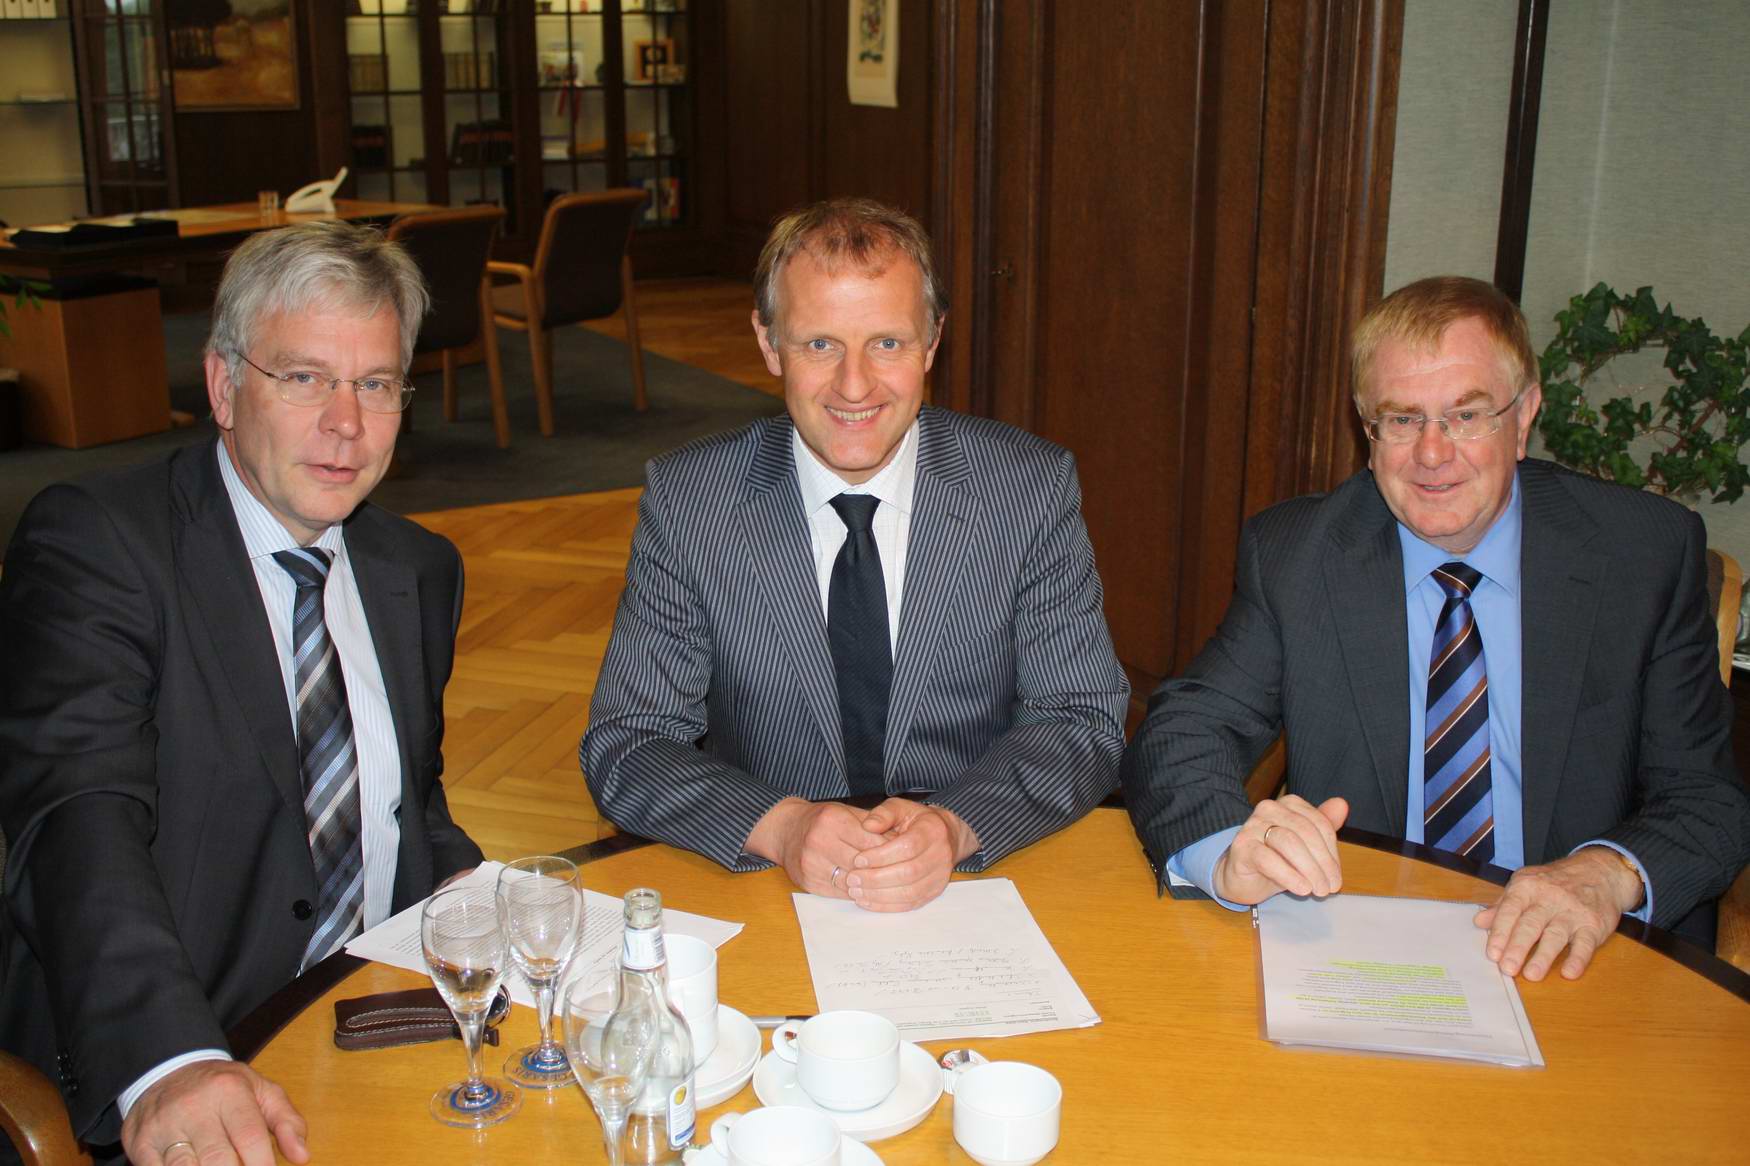 CDU-Fraktionschef Werner Knepper, Bürgermeister Dr. Strohmann und MdB Reinhold Sendker beim Gedankenaustauch im Dienstzimmer des Beckumer Bürgermeisters.  